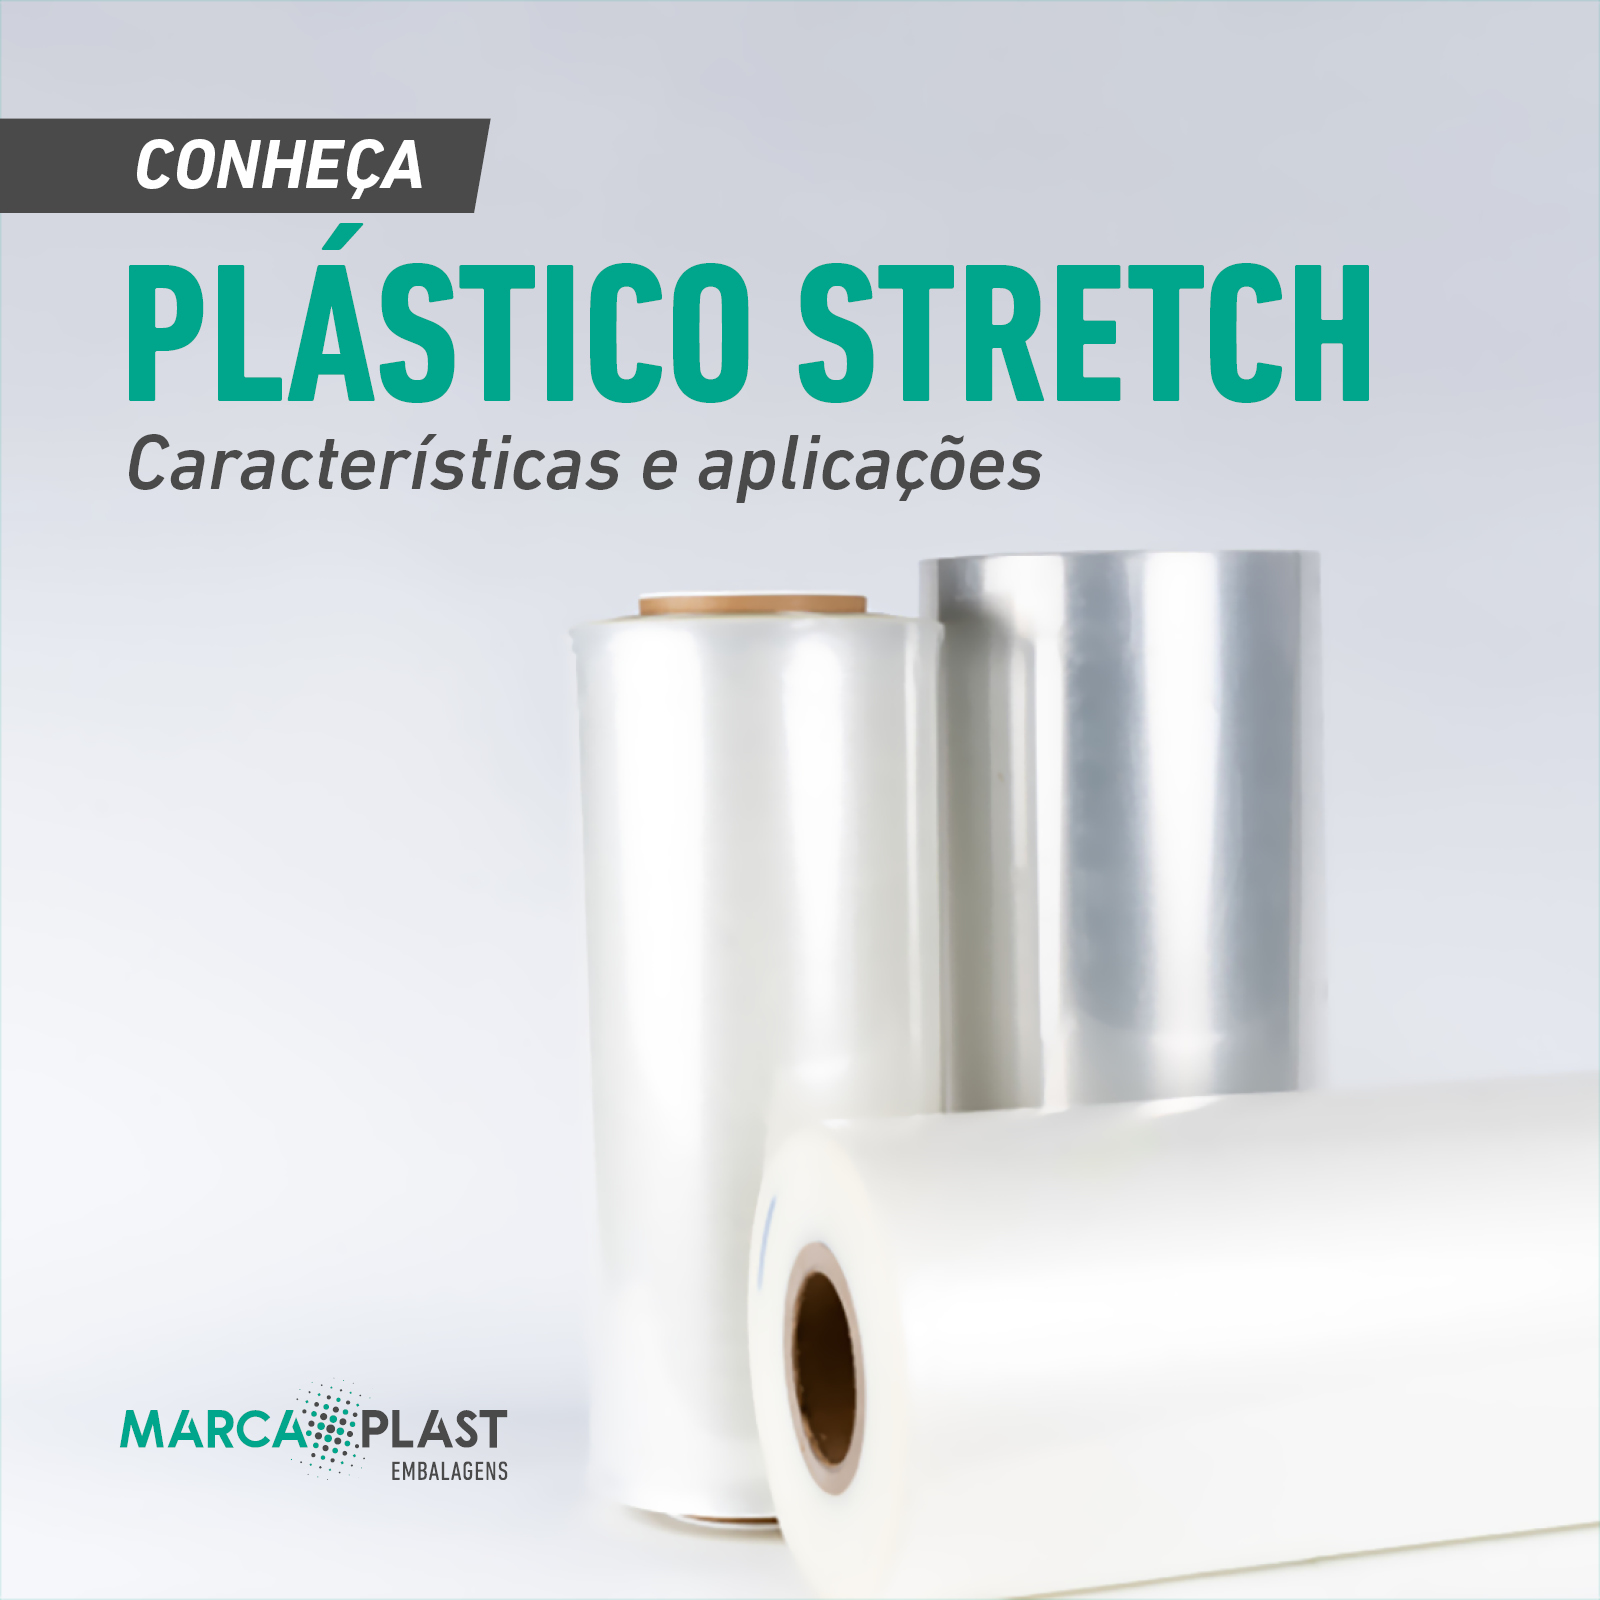 Plástico Stretch: conheça as características e aplicações